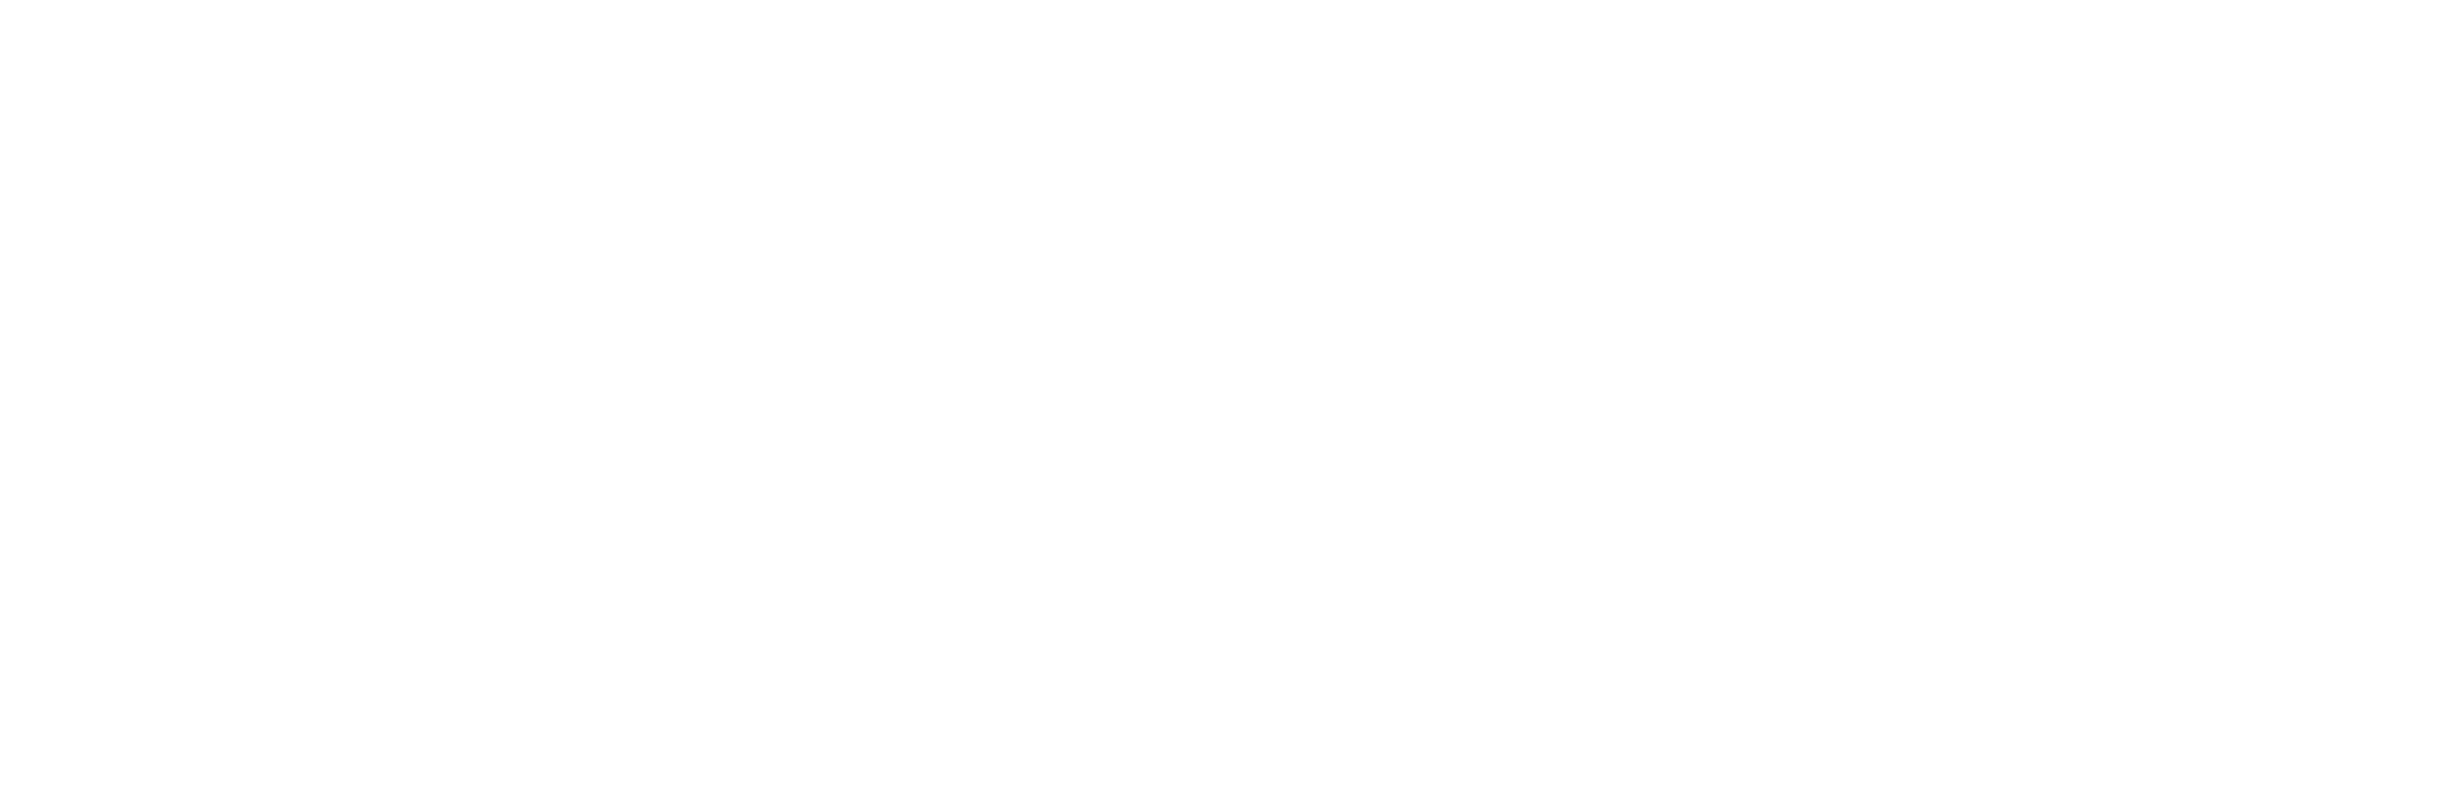 Internships – Animal Park at Conservators Center